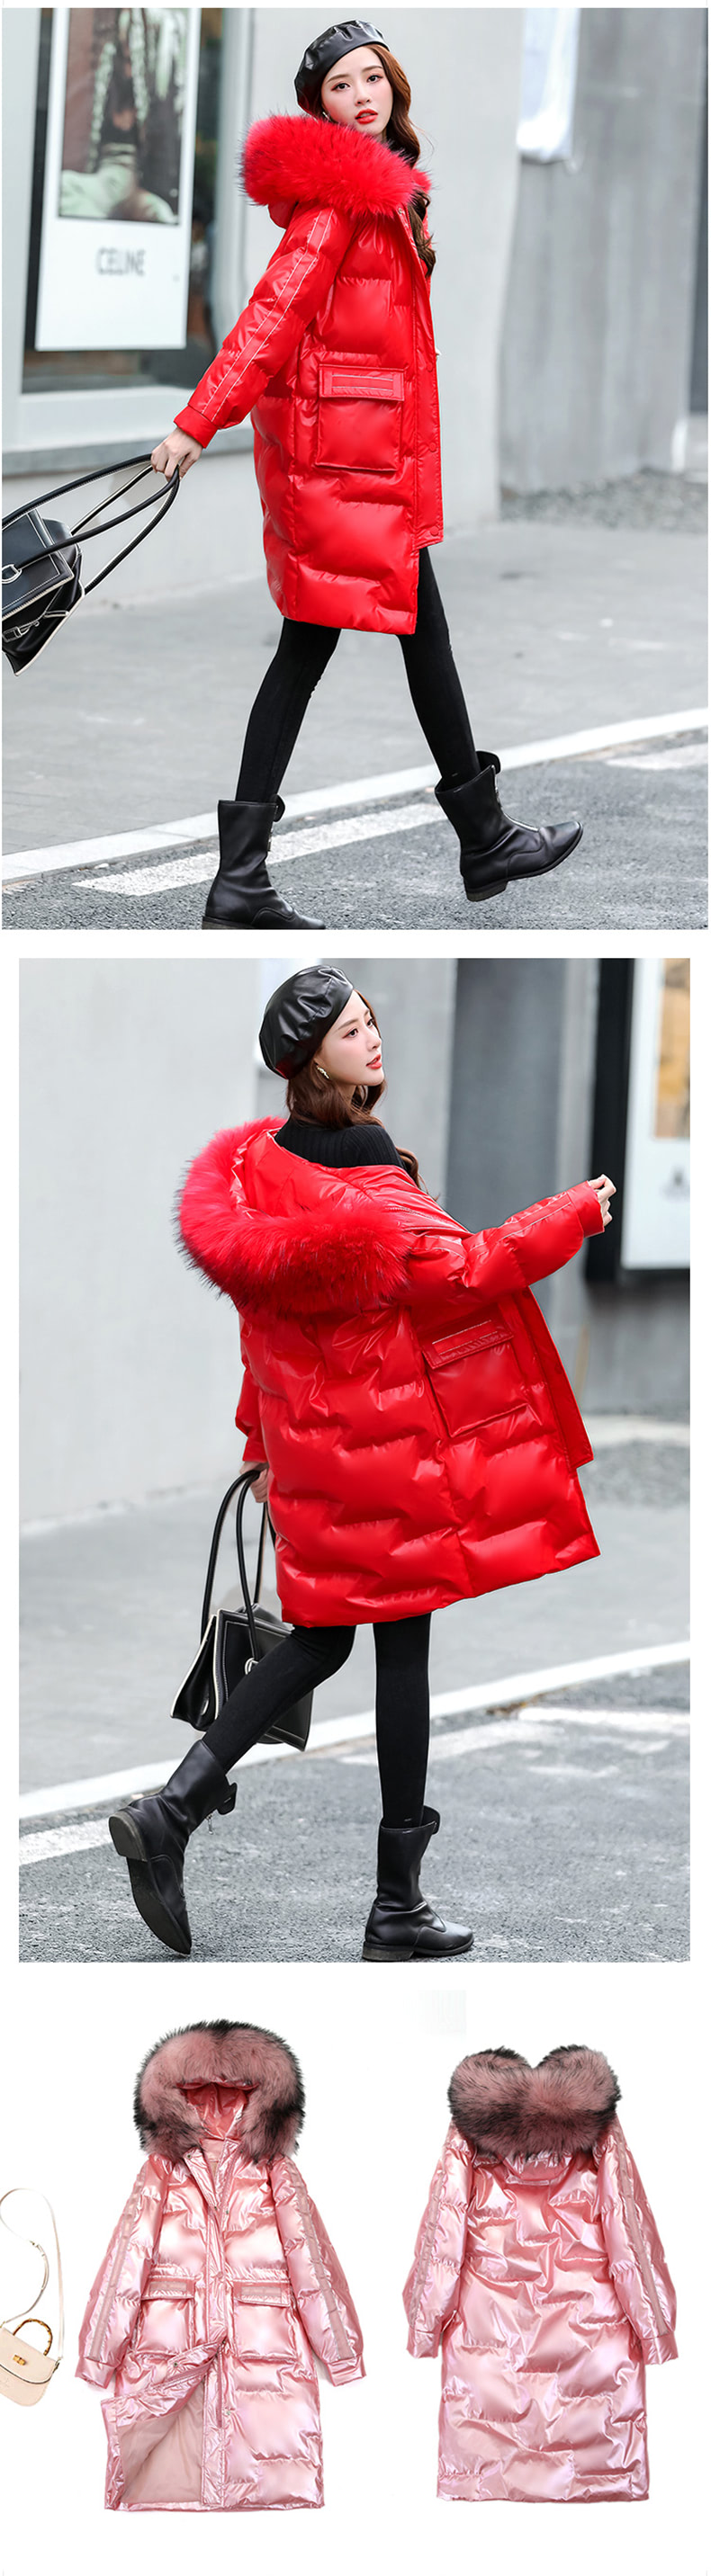 Women's Winter Slim Outfit Zipper Fur Hooded Outwear Coat16